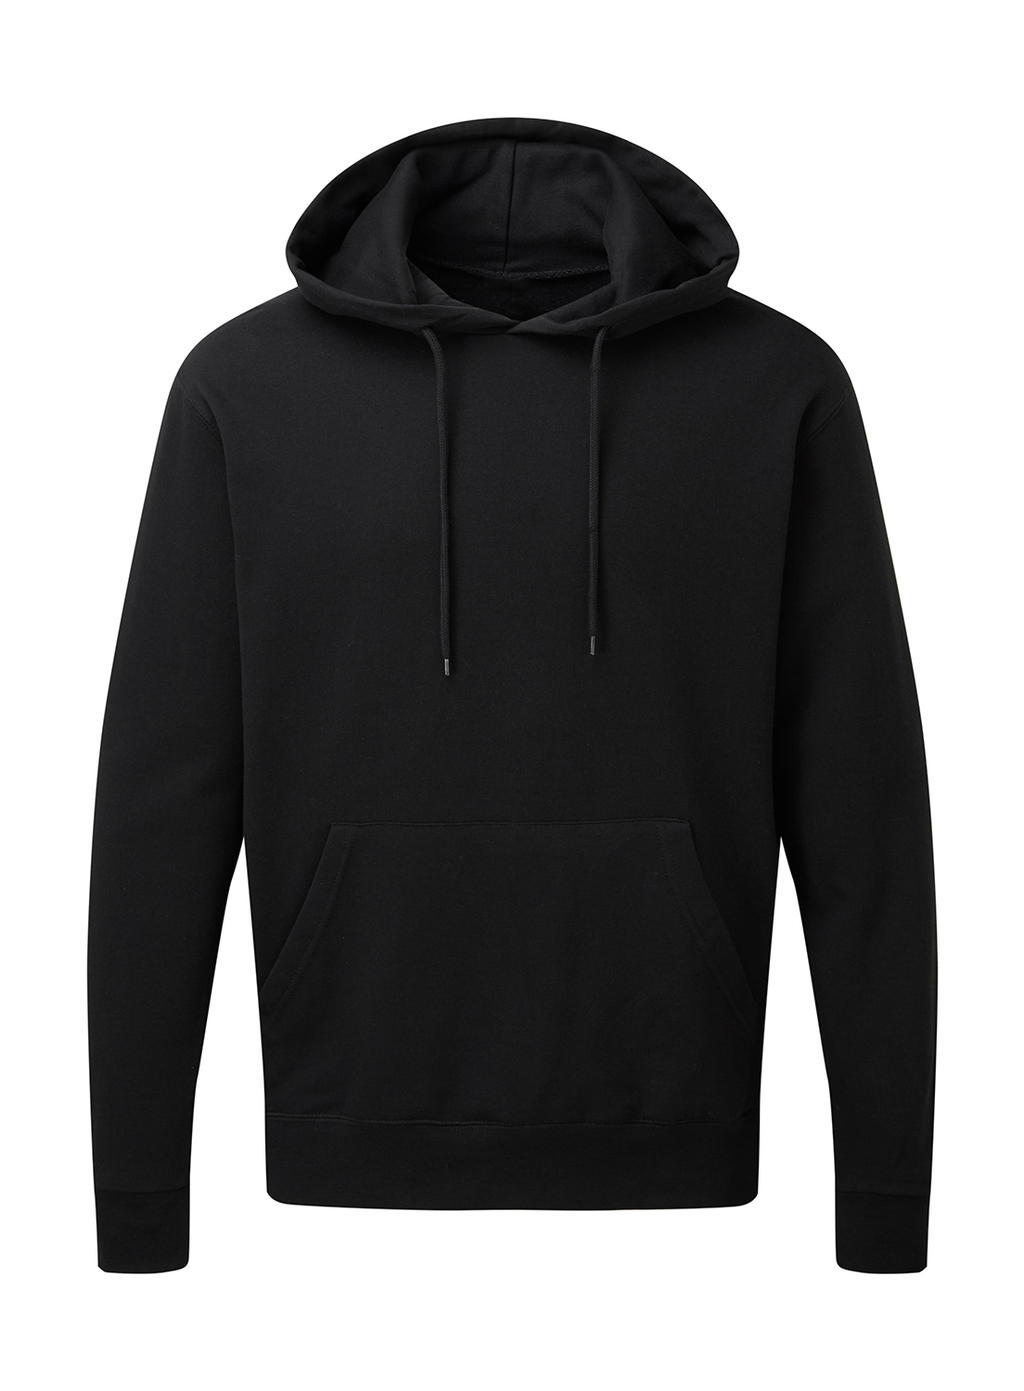  Mens Hooded Sweatshirt in Farbe Black